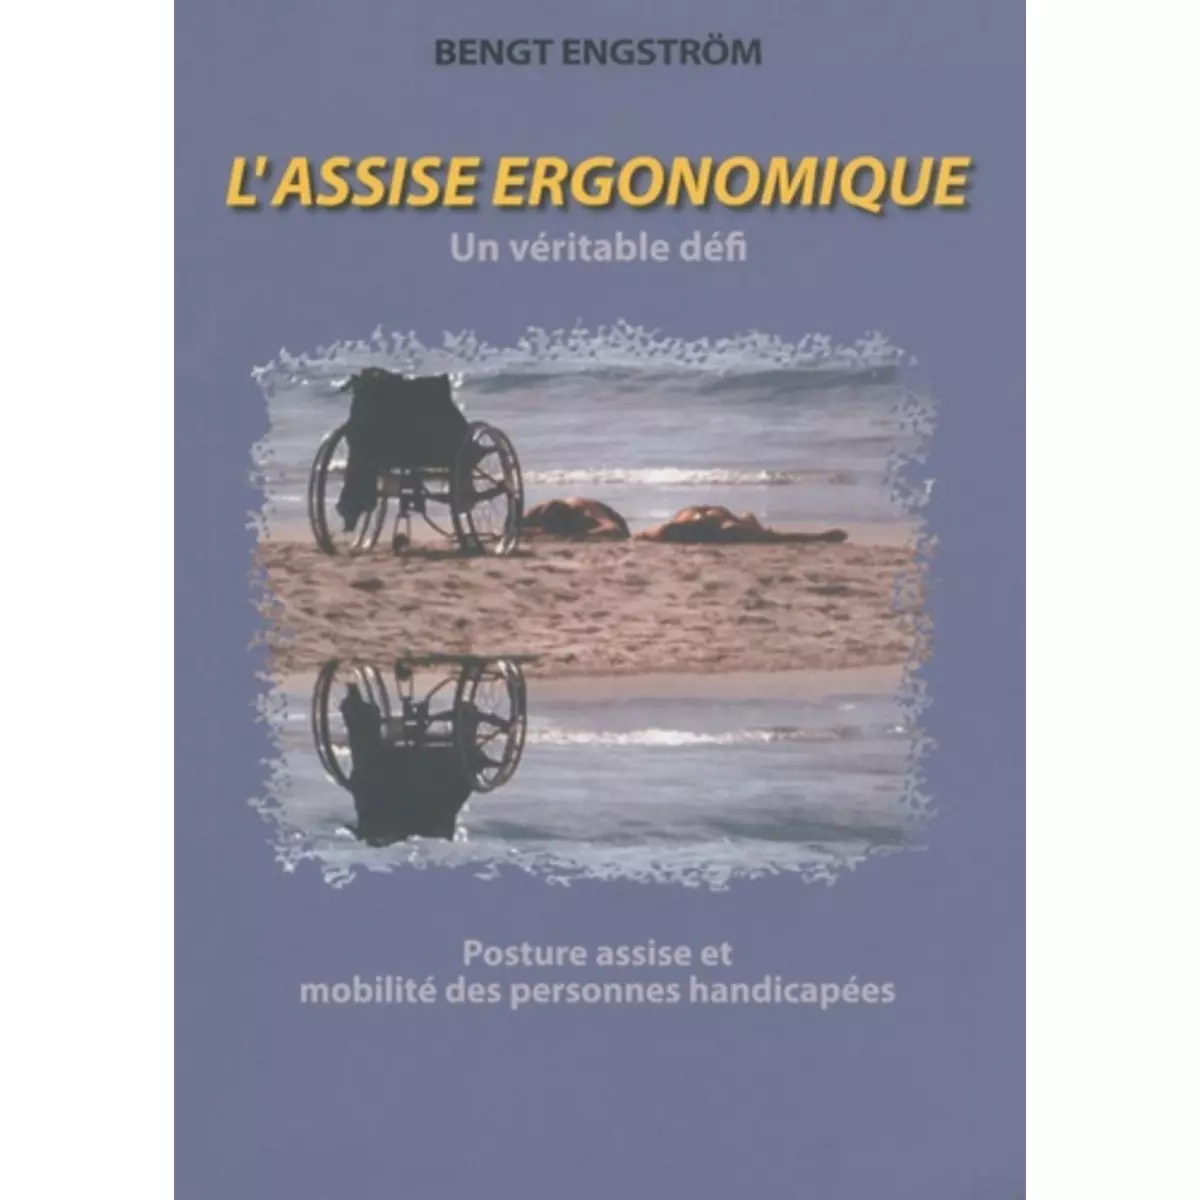  L'ASSISE ERGONOMIQUE - UN VERITABLE DEFI. POSTURE ASSISE ET MOBILITE DES PERSONNES HANDICAPEES - RISQUES ET POTENTIALITES LIES A L'UTILISATION DES FAUTEUILS ROULANTS, Engström Bengt